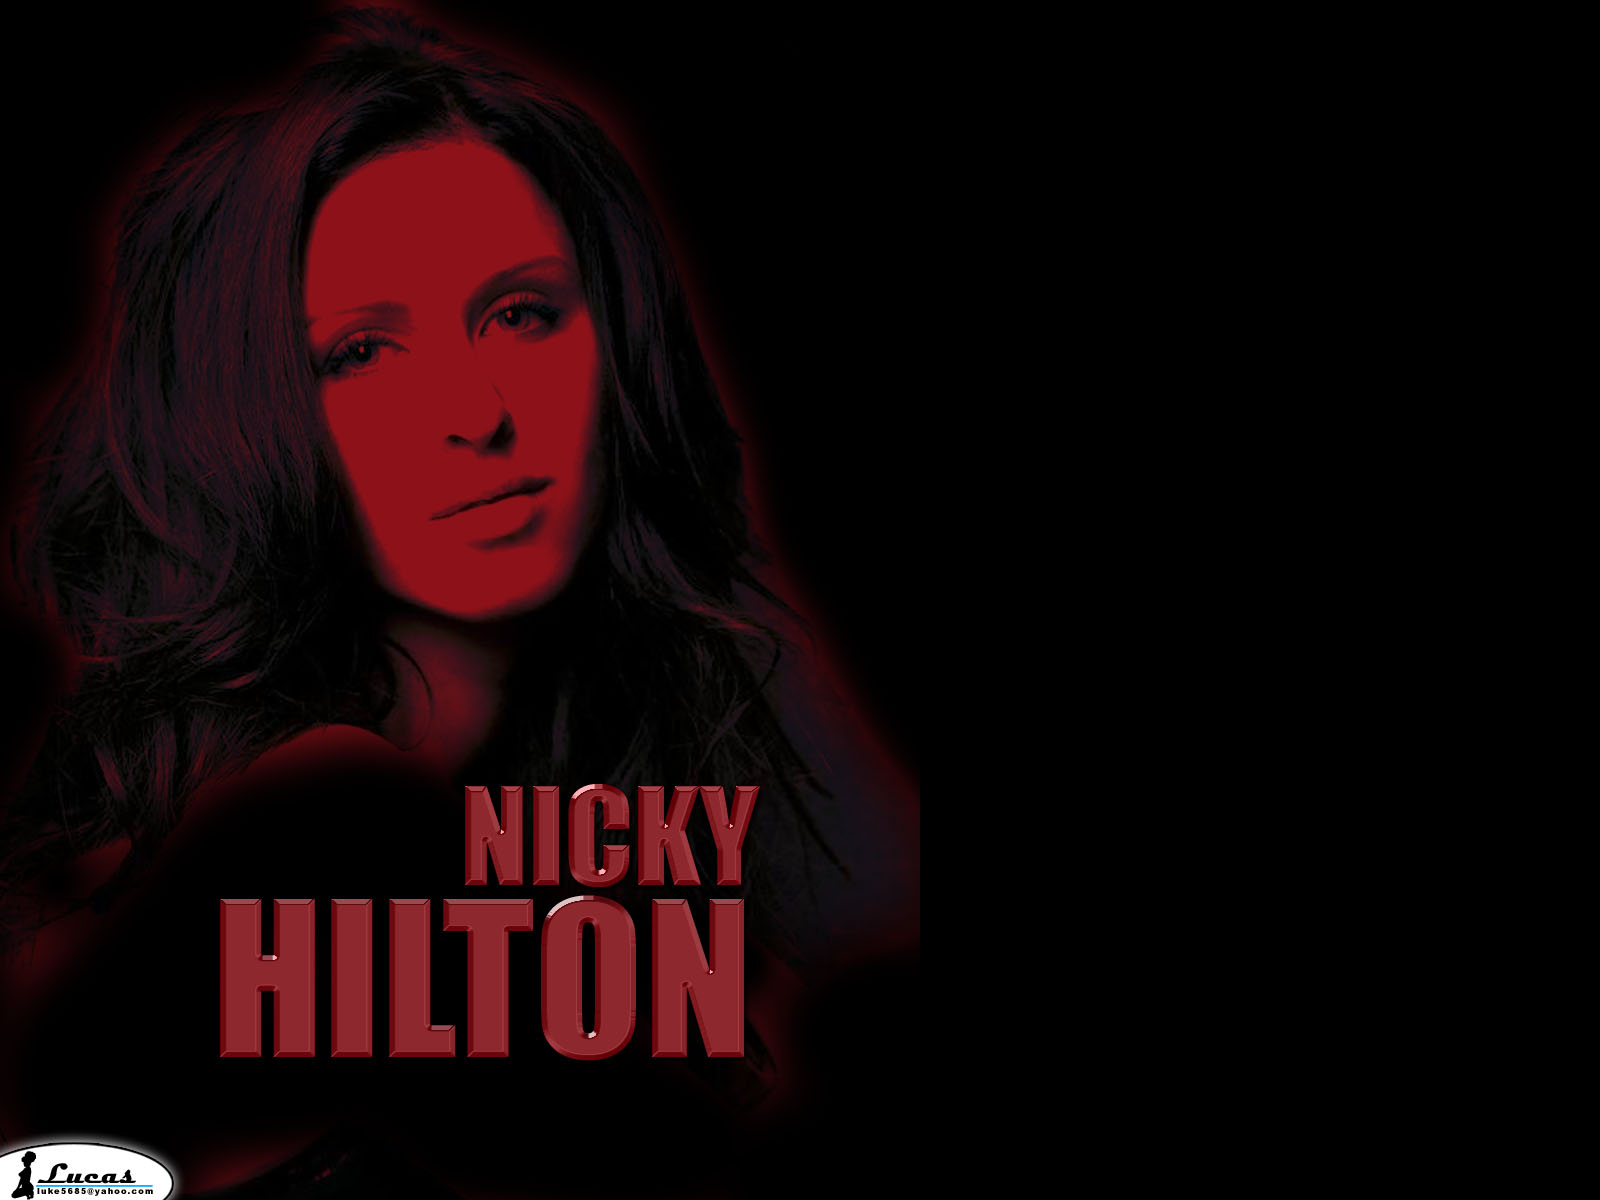 Nicky hilton 5